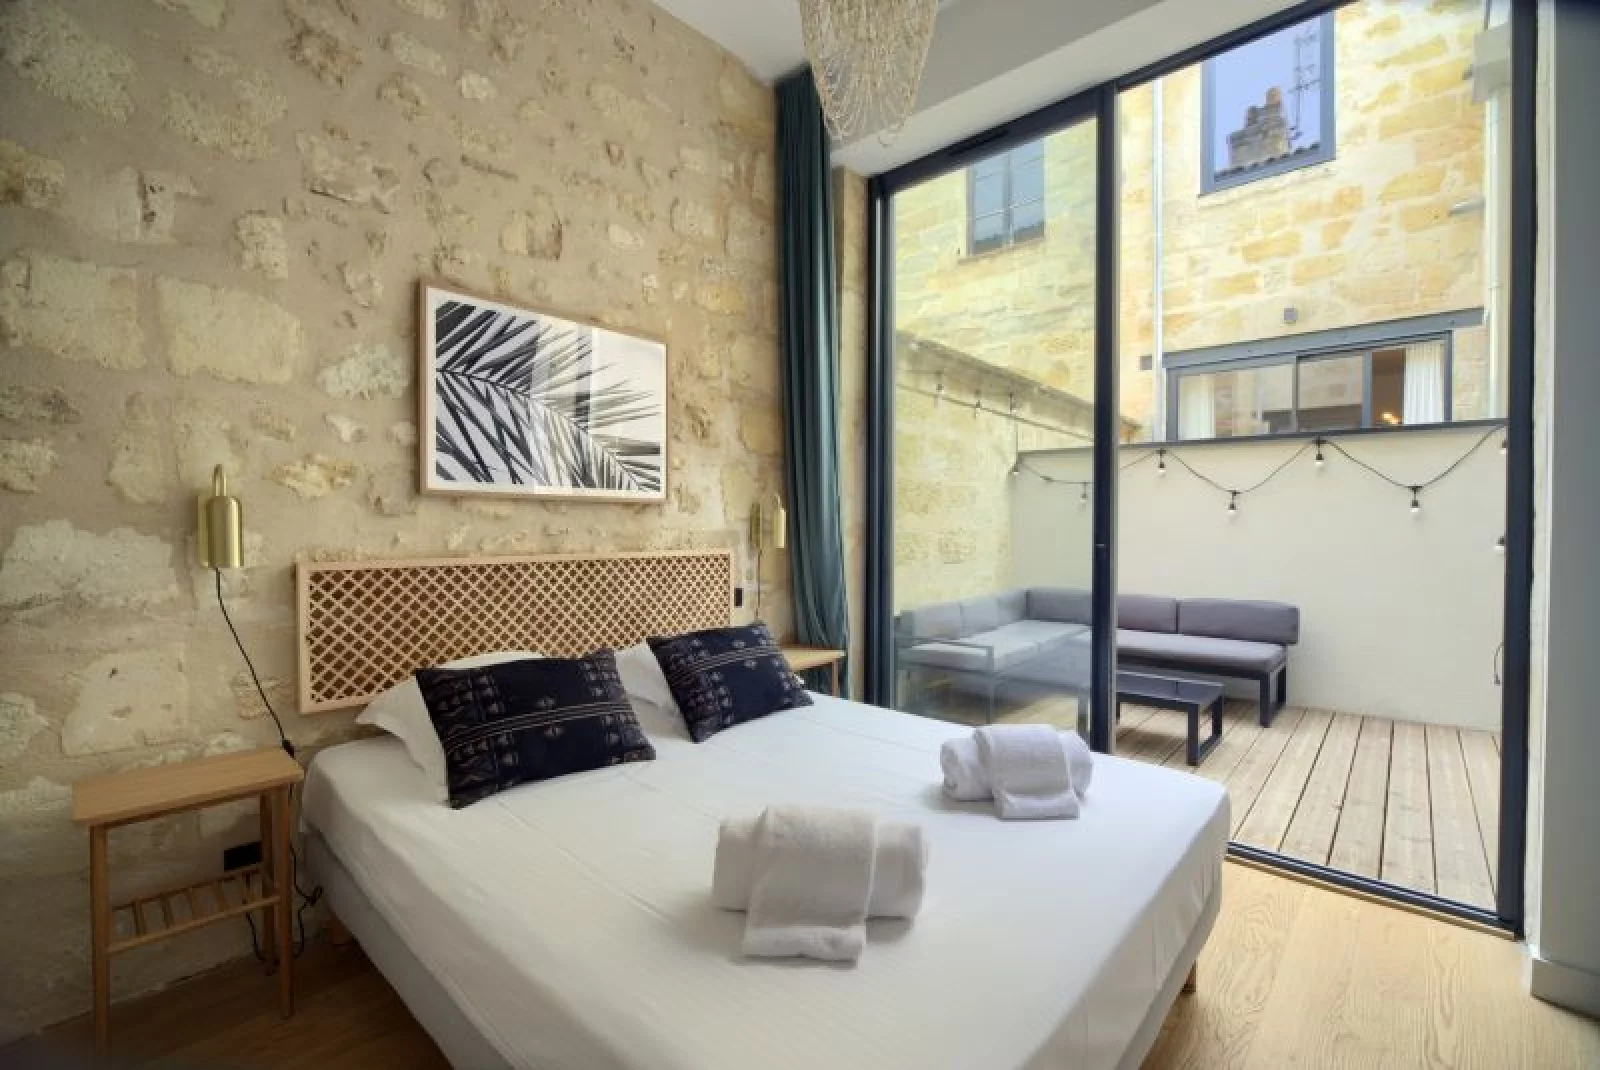 Location appartement meublé 3 pièces de 62m² avec terrasse (Bordeaux - Chartrons)